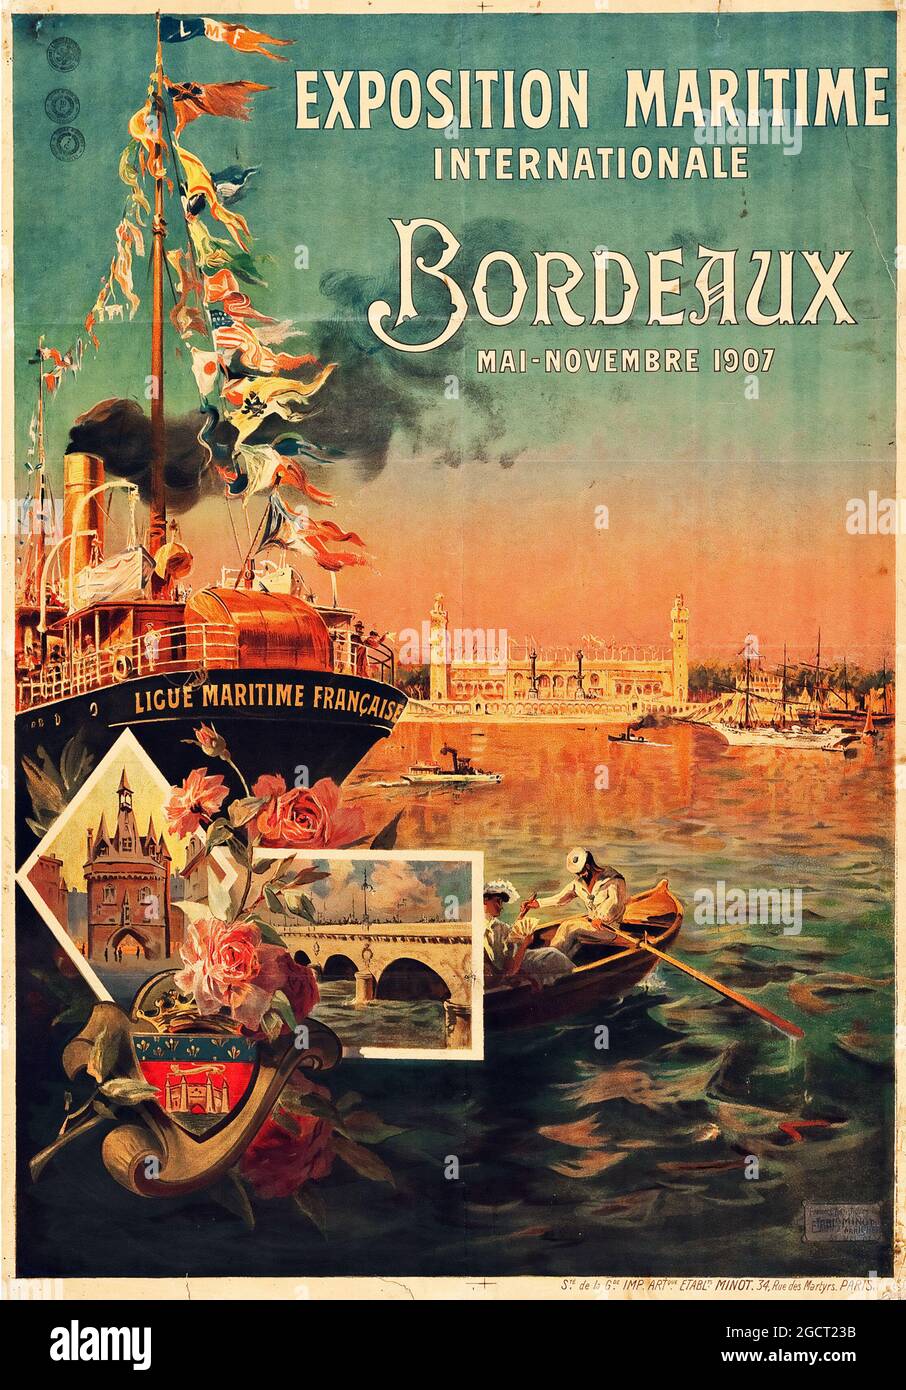 Exposition maritime internationale, Bordeaux, France affiche de voyage (Minot, Paris, 1907) 'exposition maritime internationale' Banque D'Images